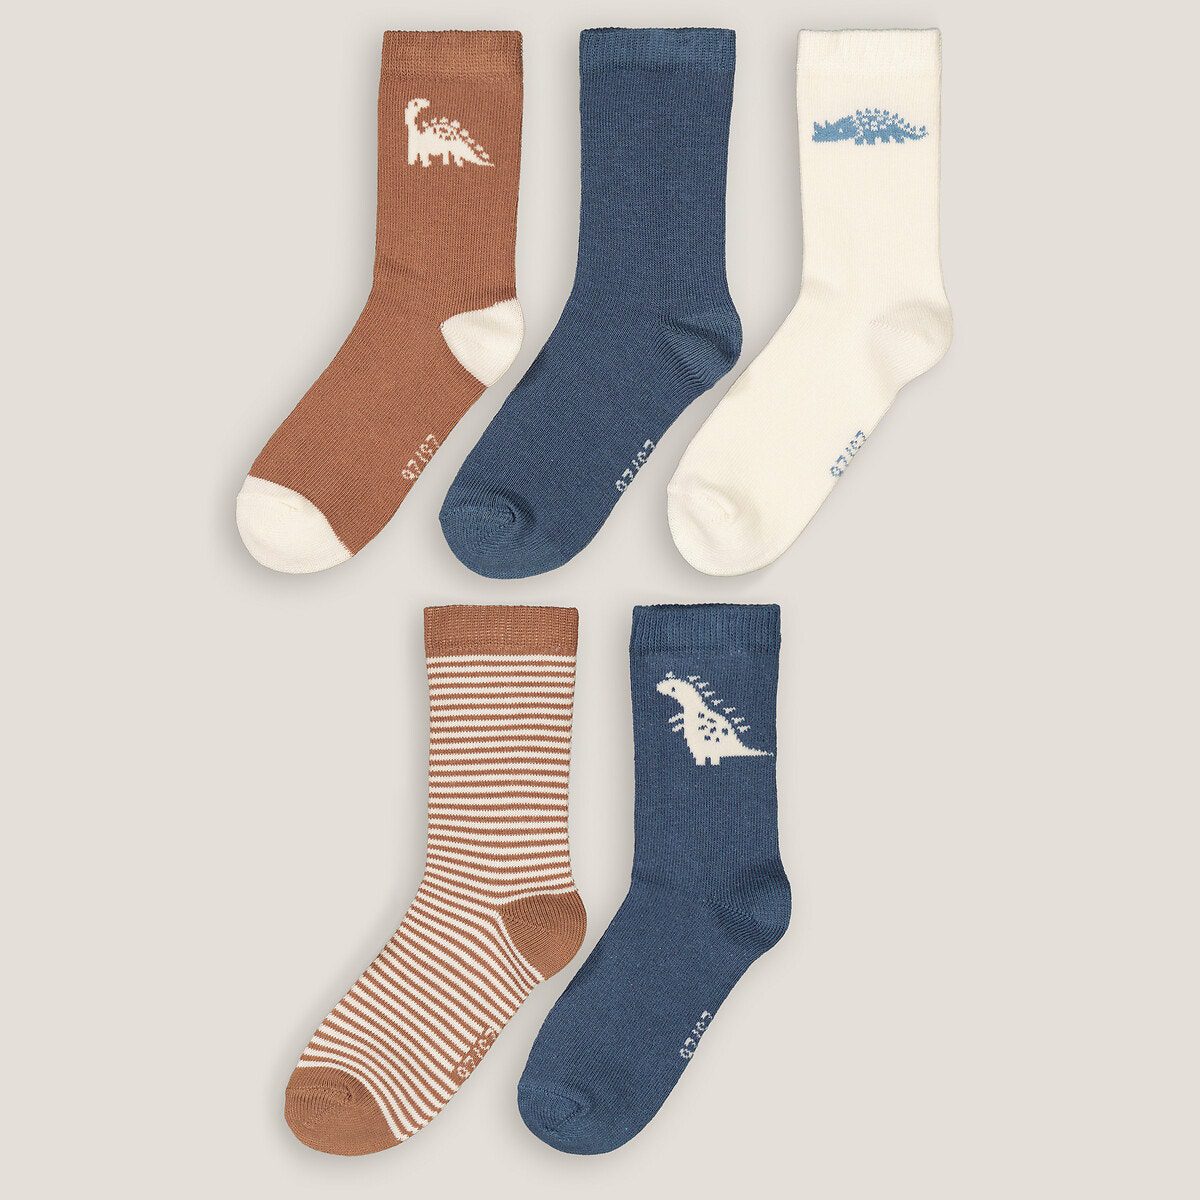 Σετ 5 ζευγάρια κάλτσες με σχέδιο δεινόσαυρο Διαφορα Χρωματα